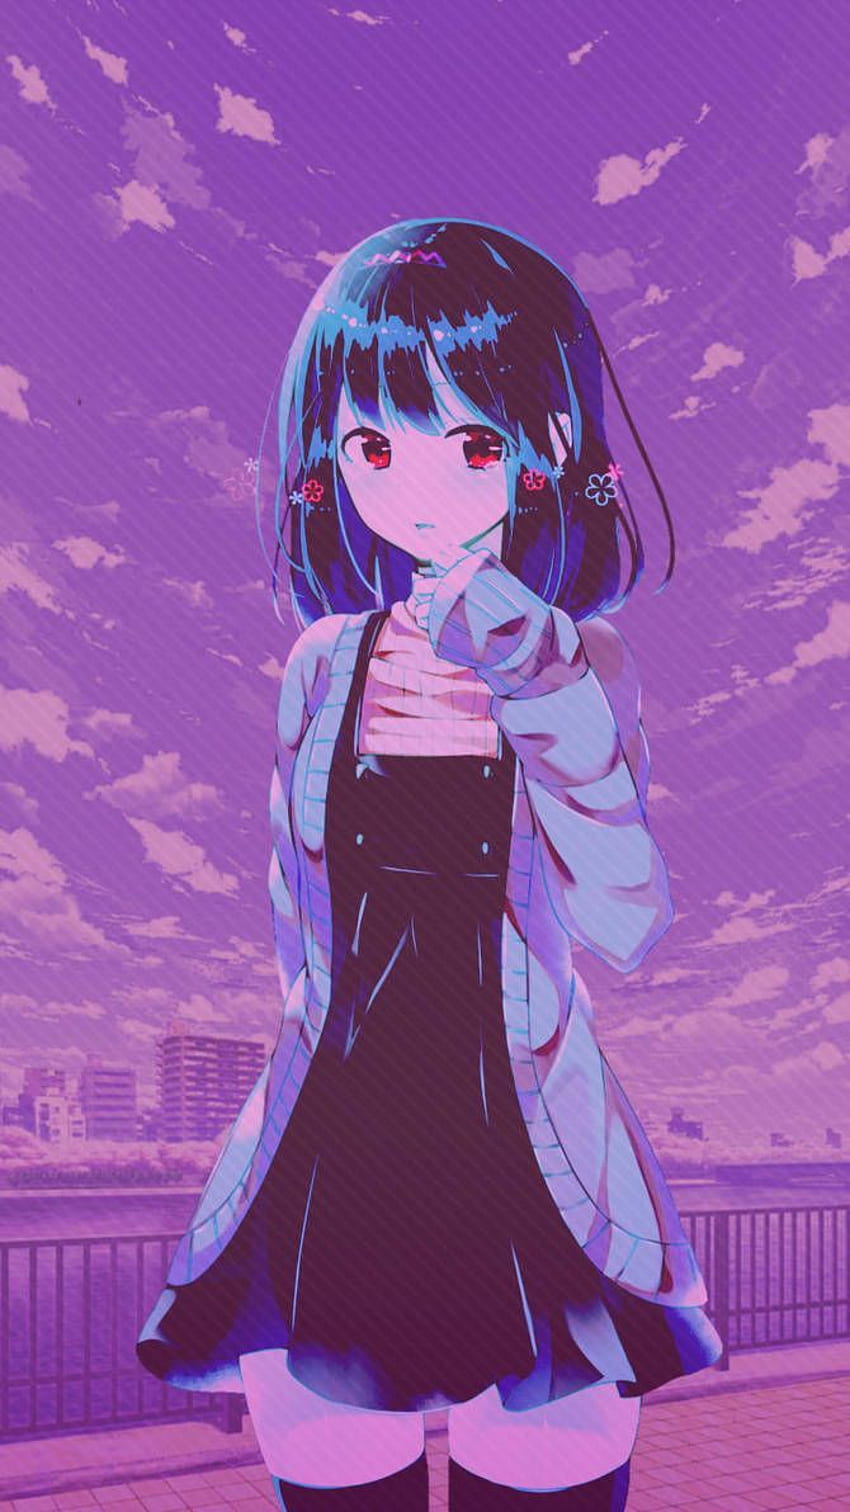 Anime girl purple aesthetic HD wallpapers | Pxfuel